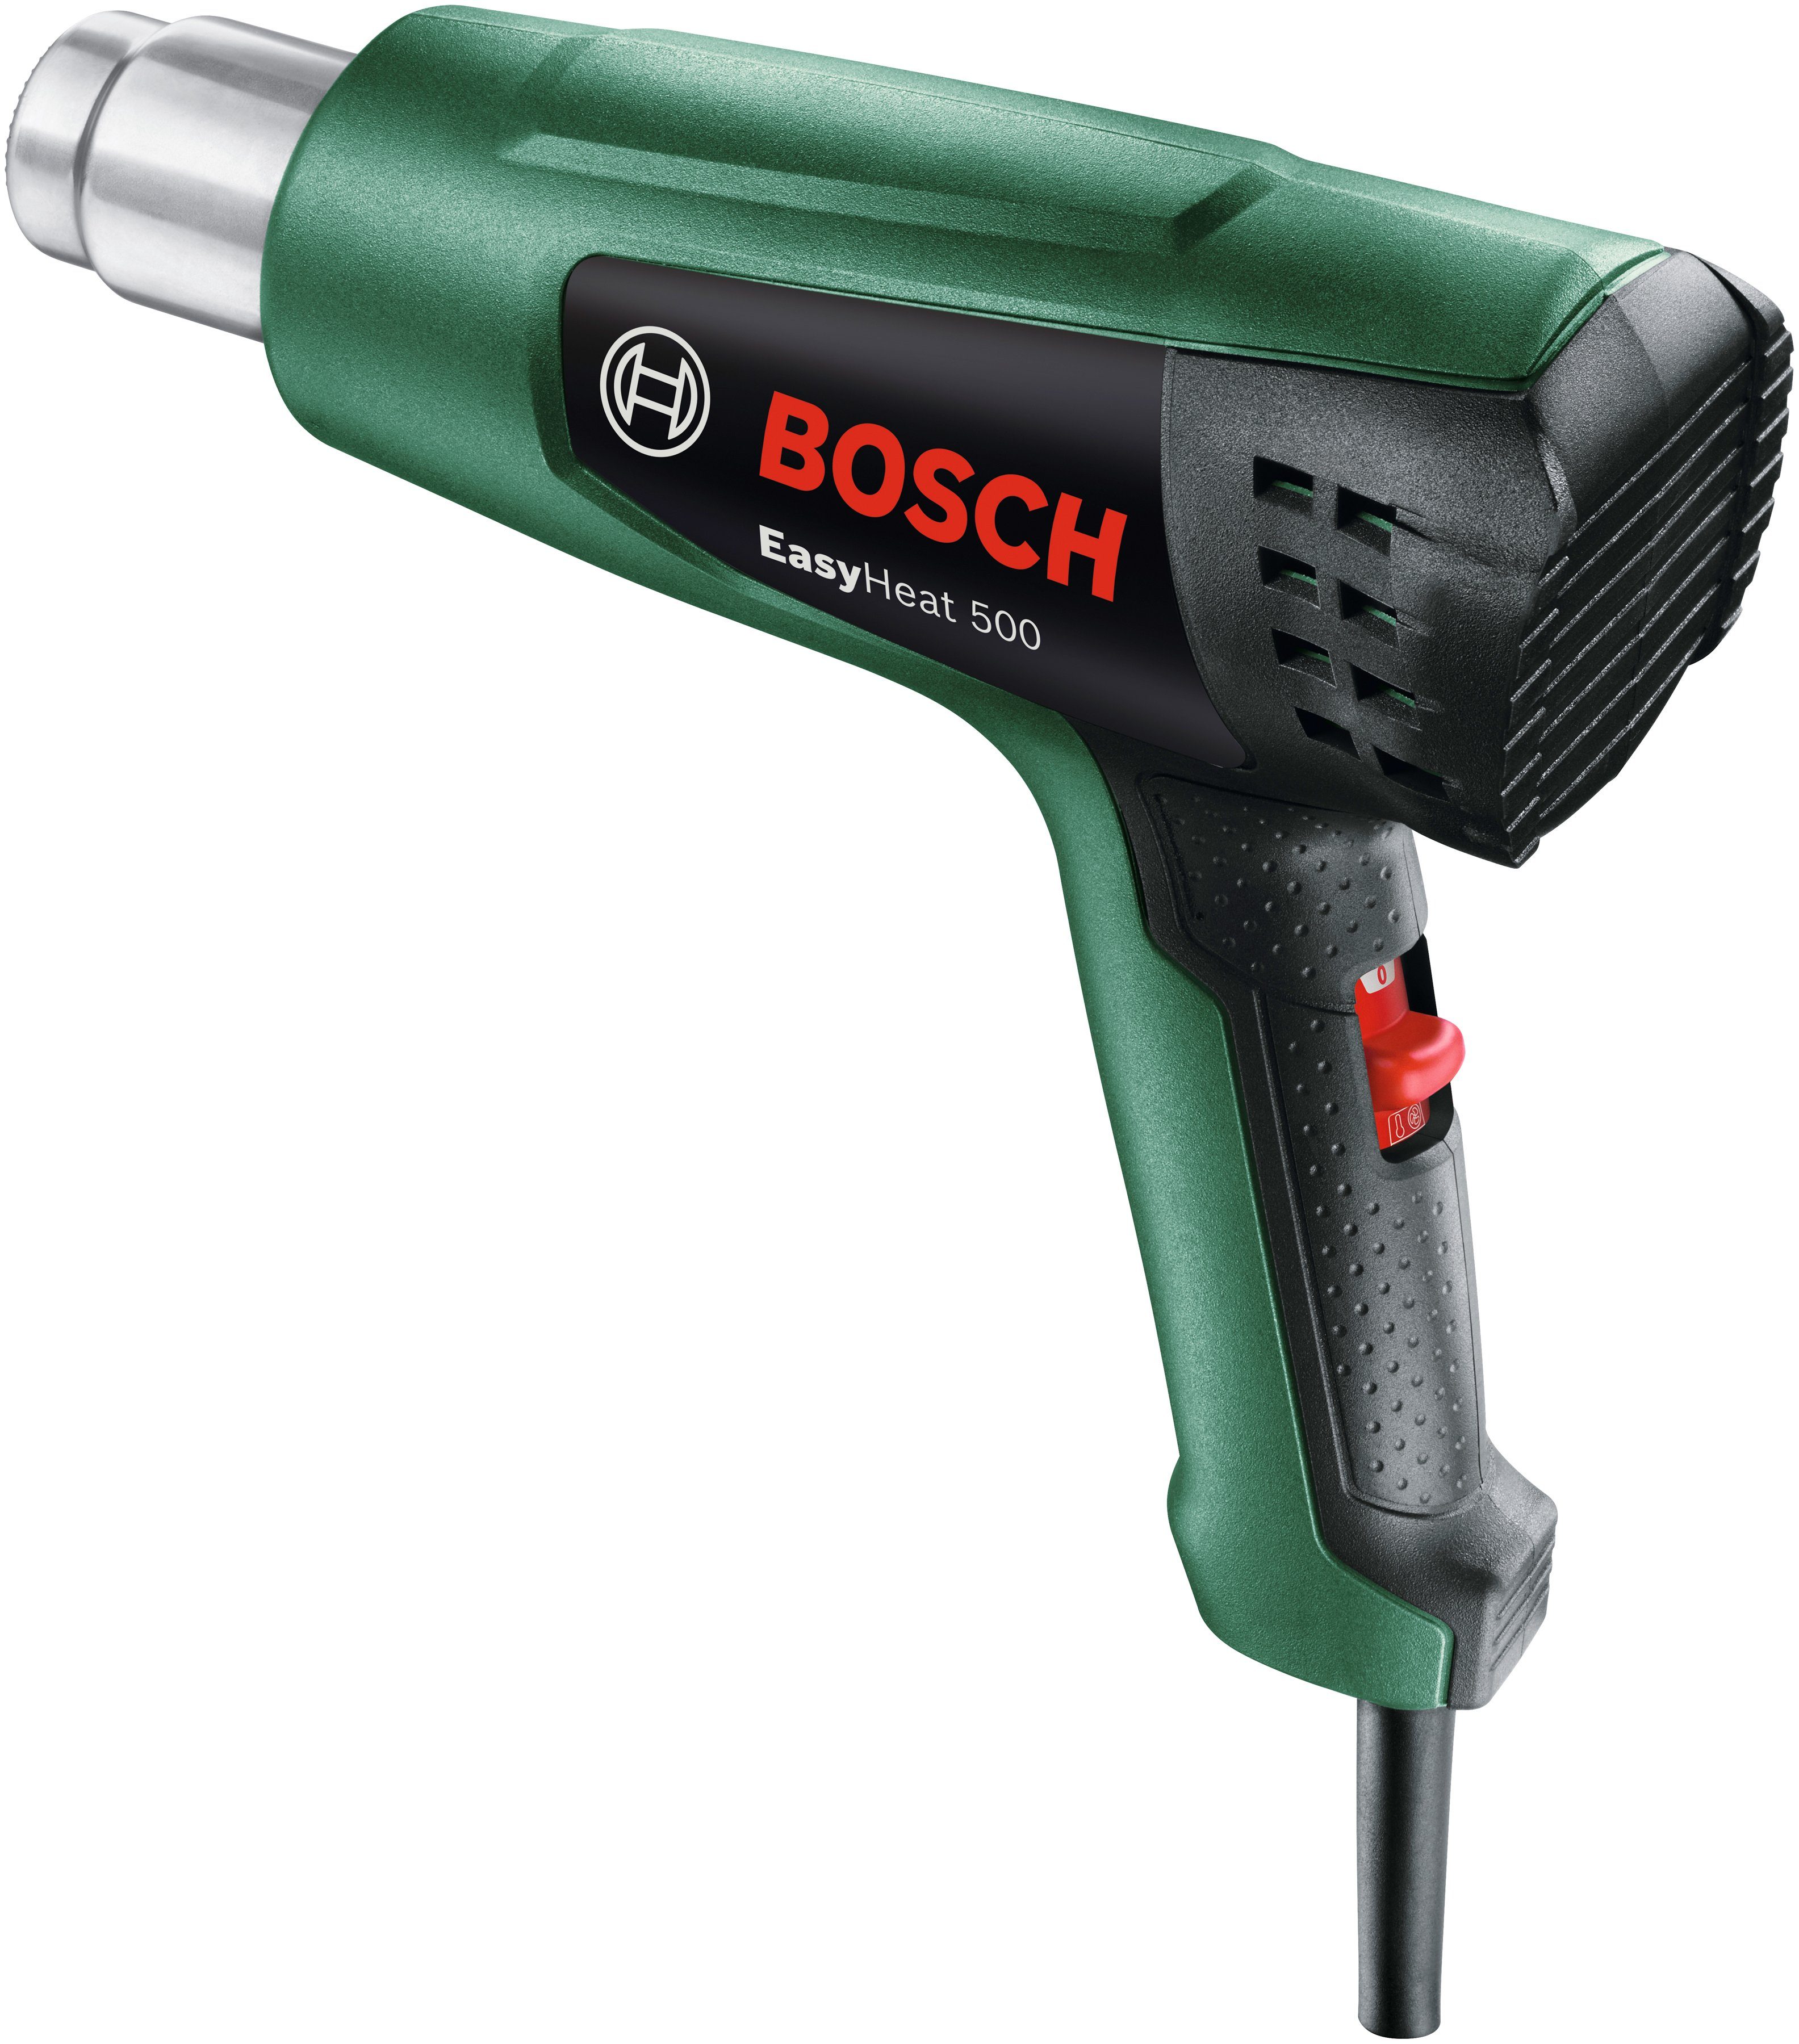 & max. 500 Bosch 500, W, EasyHeat °C bis 1600 Heißluftgebläse Garden in Home